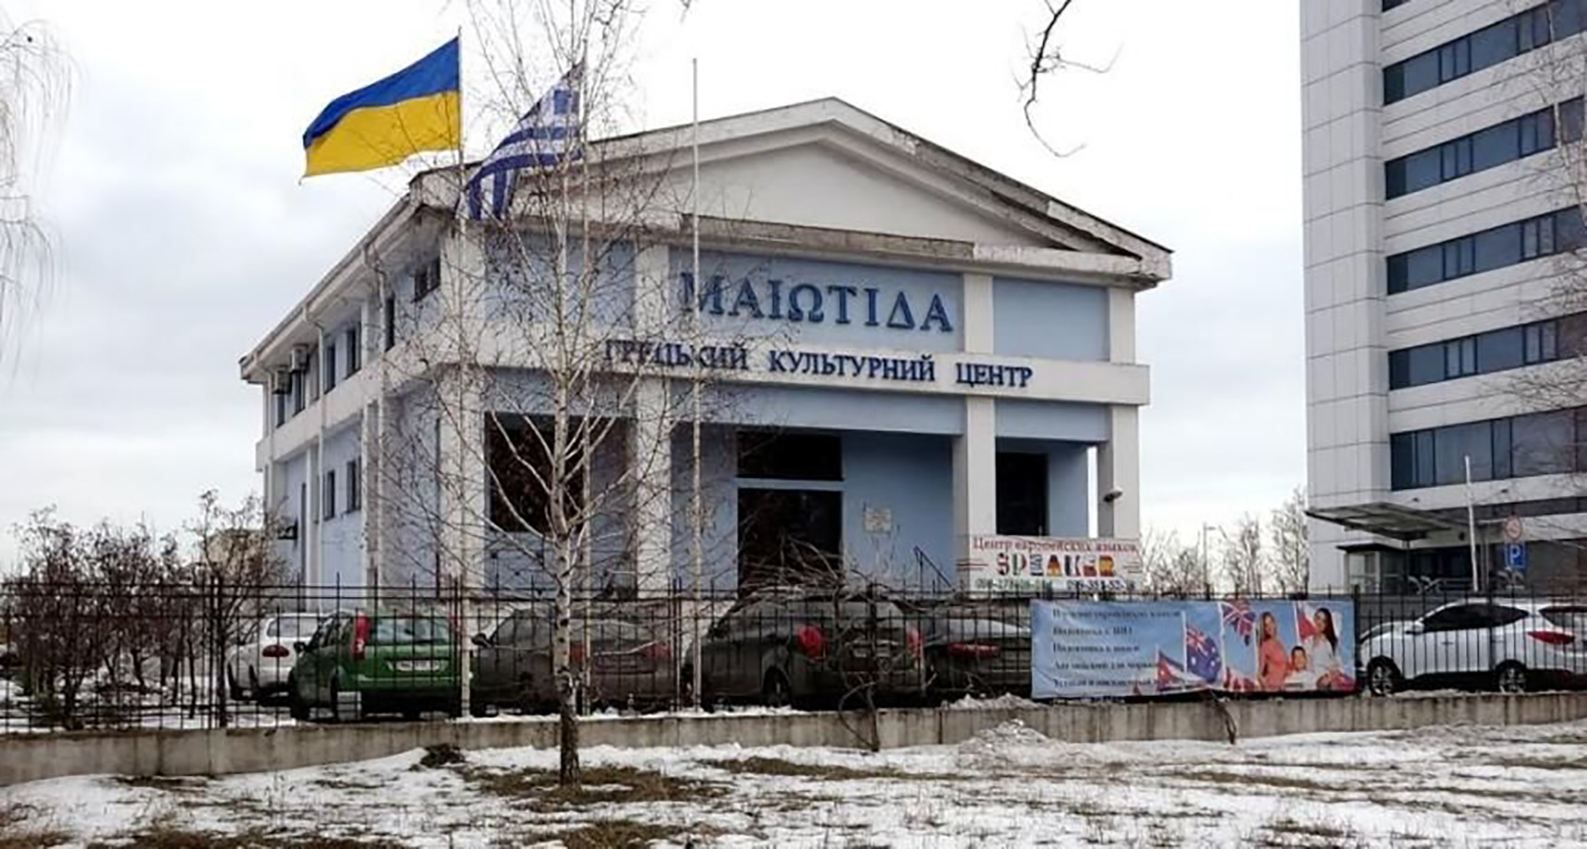 Россия разрушила здания 4 консульств в Украине: МИД выражает решительное осуждение